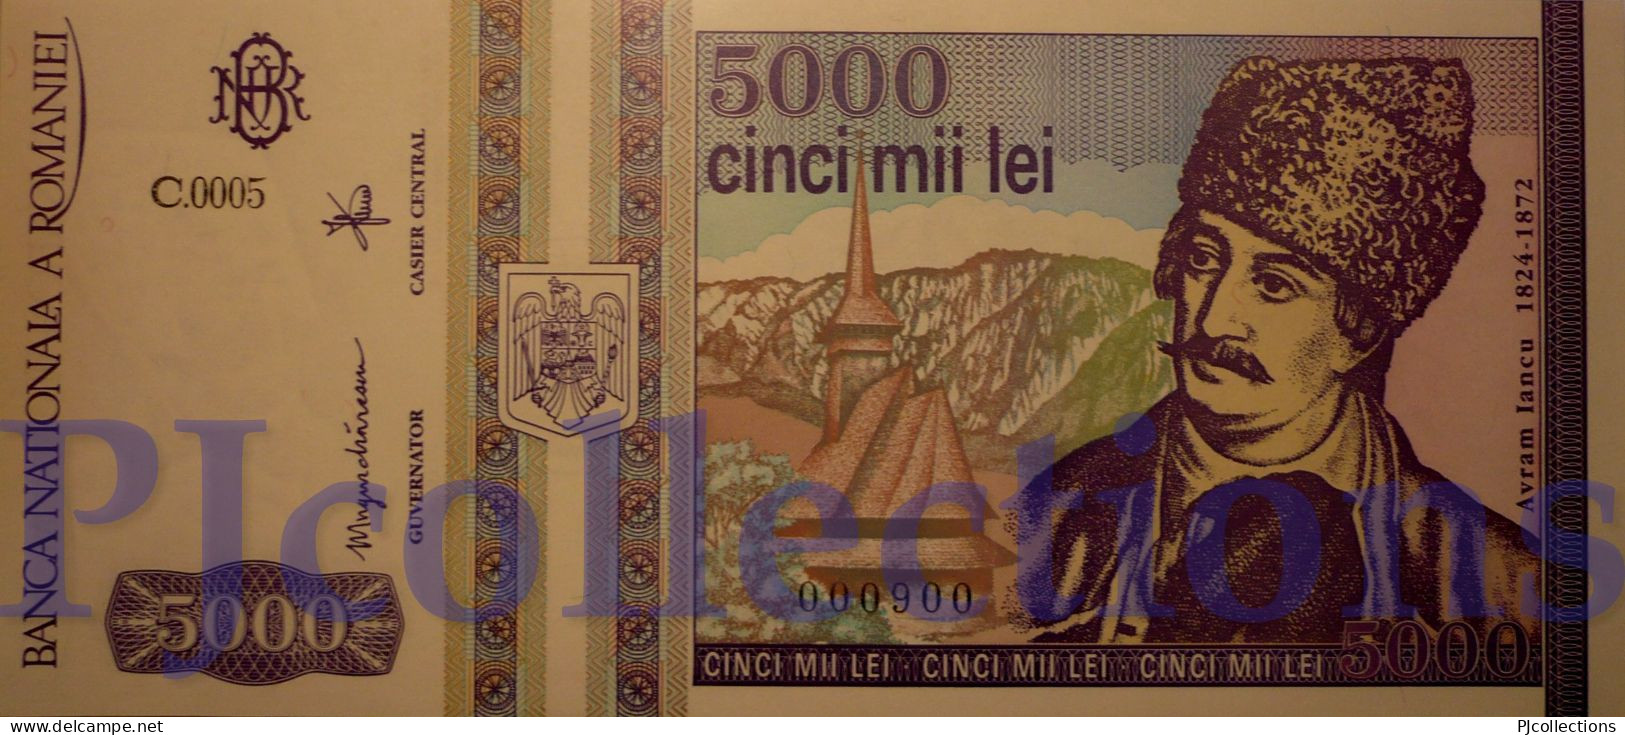 ROMANIA 5000 LEI 1993 PICK 104a UNC LOW & GOOD SERIAL NUMBER "000900" - Rumänien